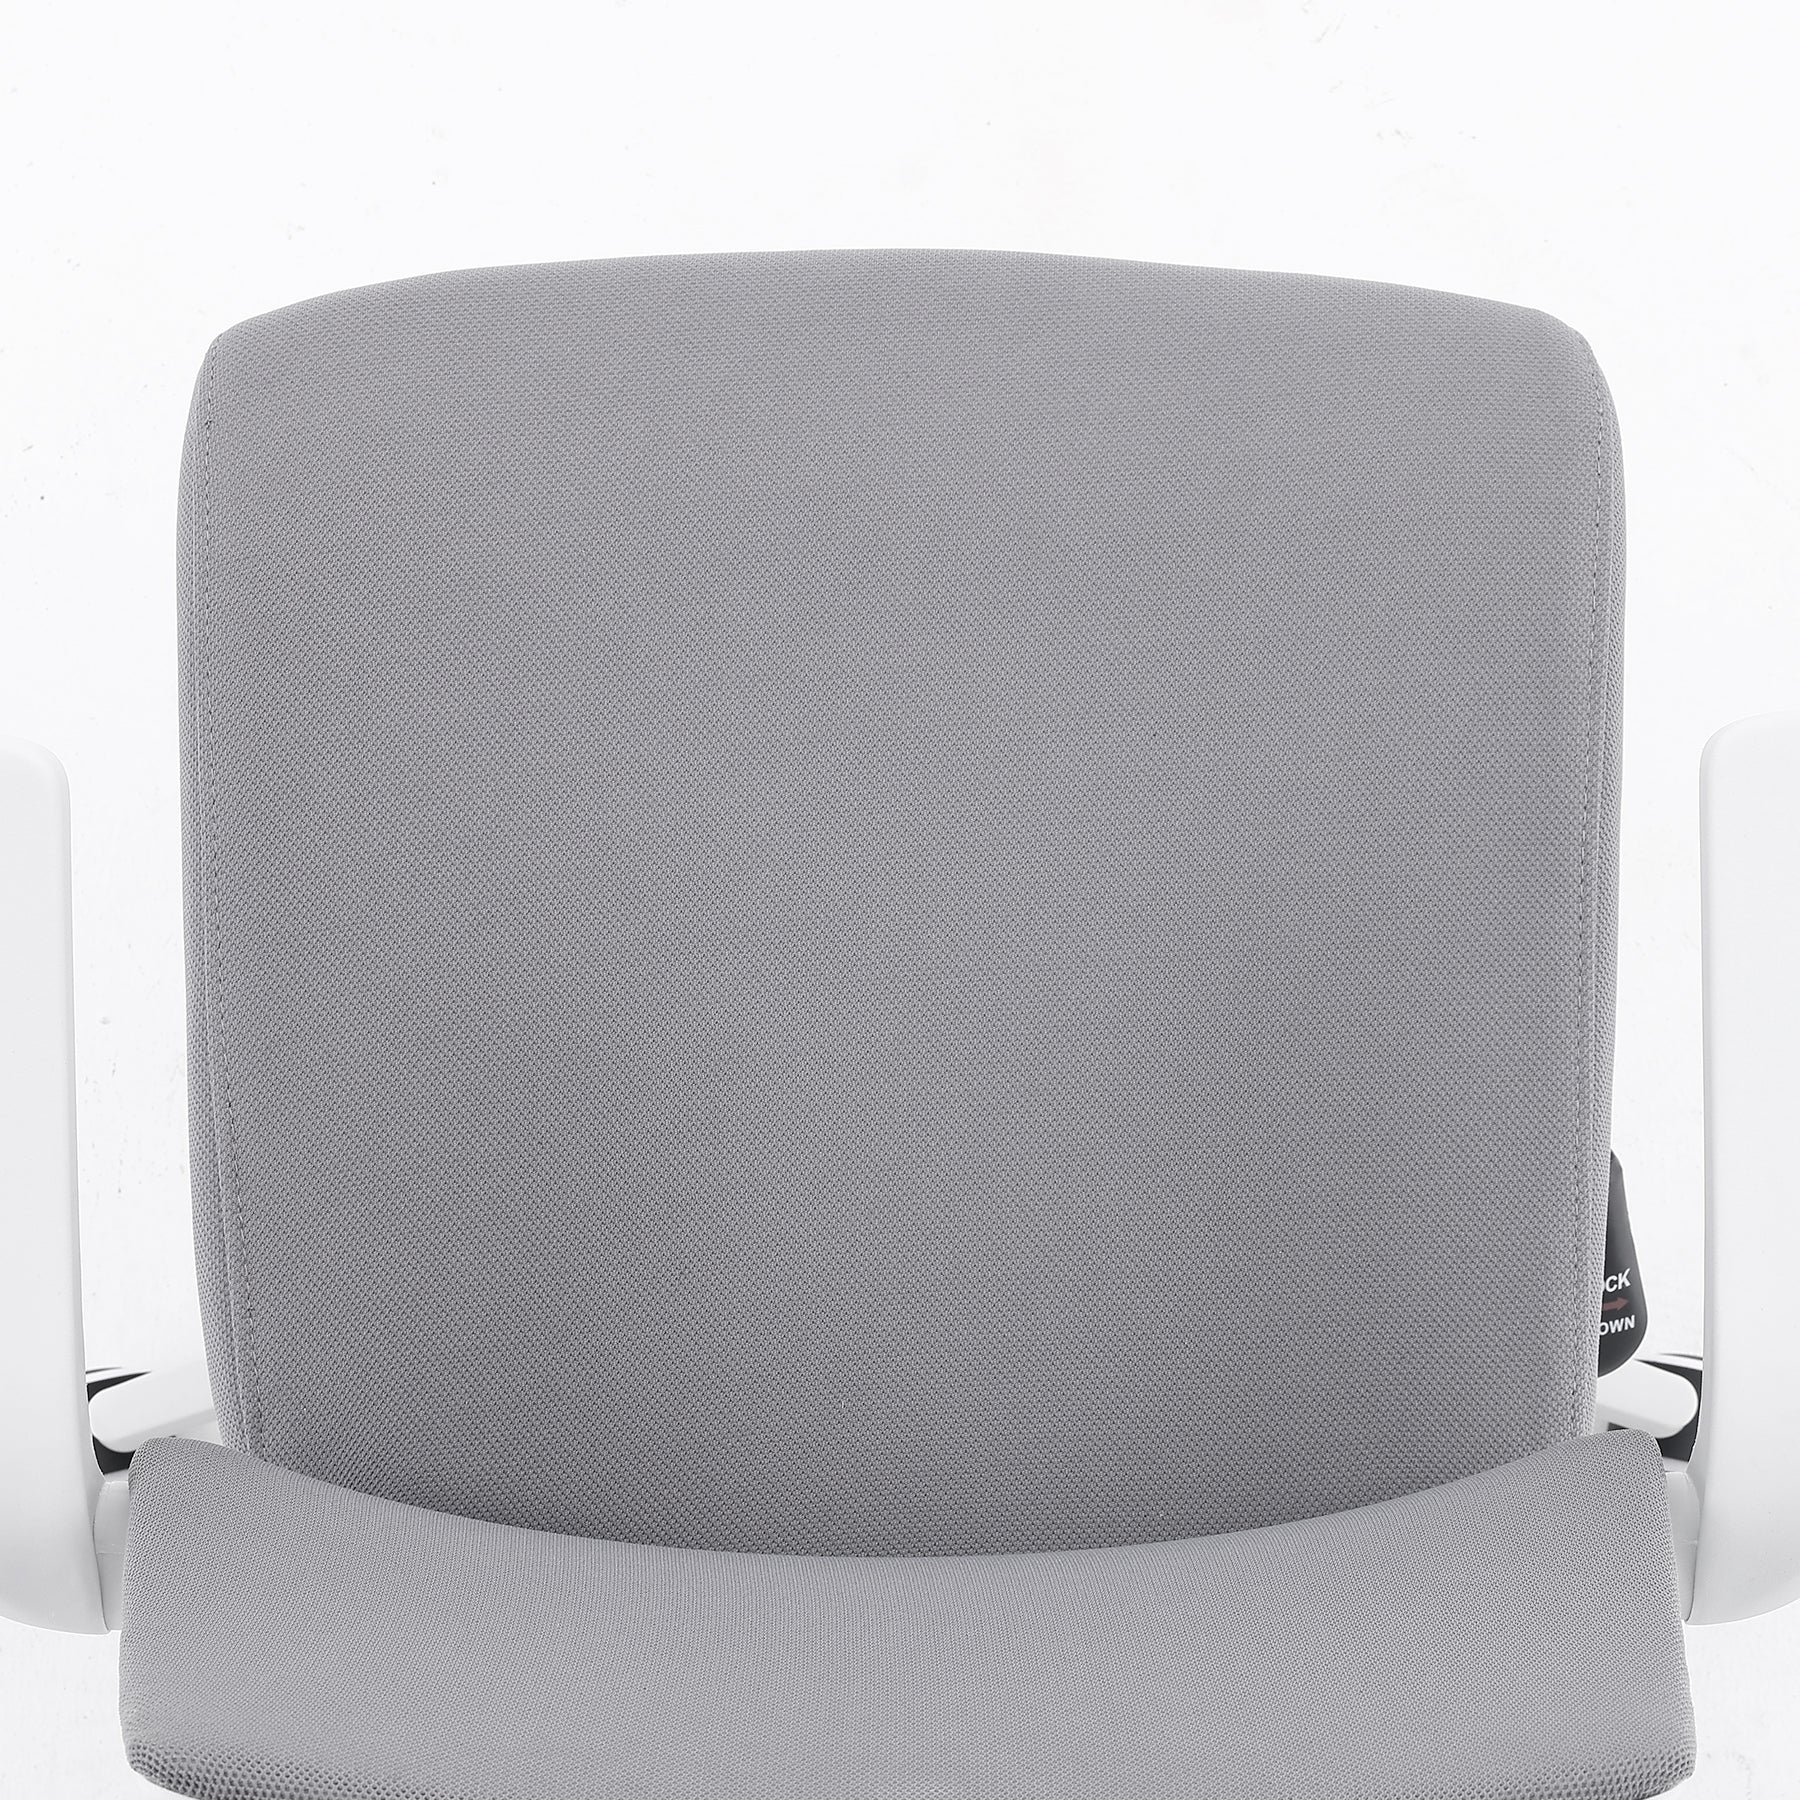 <tc>Sihoo M76A chaise de bureau ergonomique avec cintre</tc>